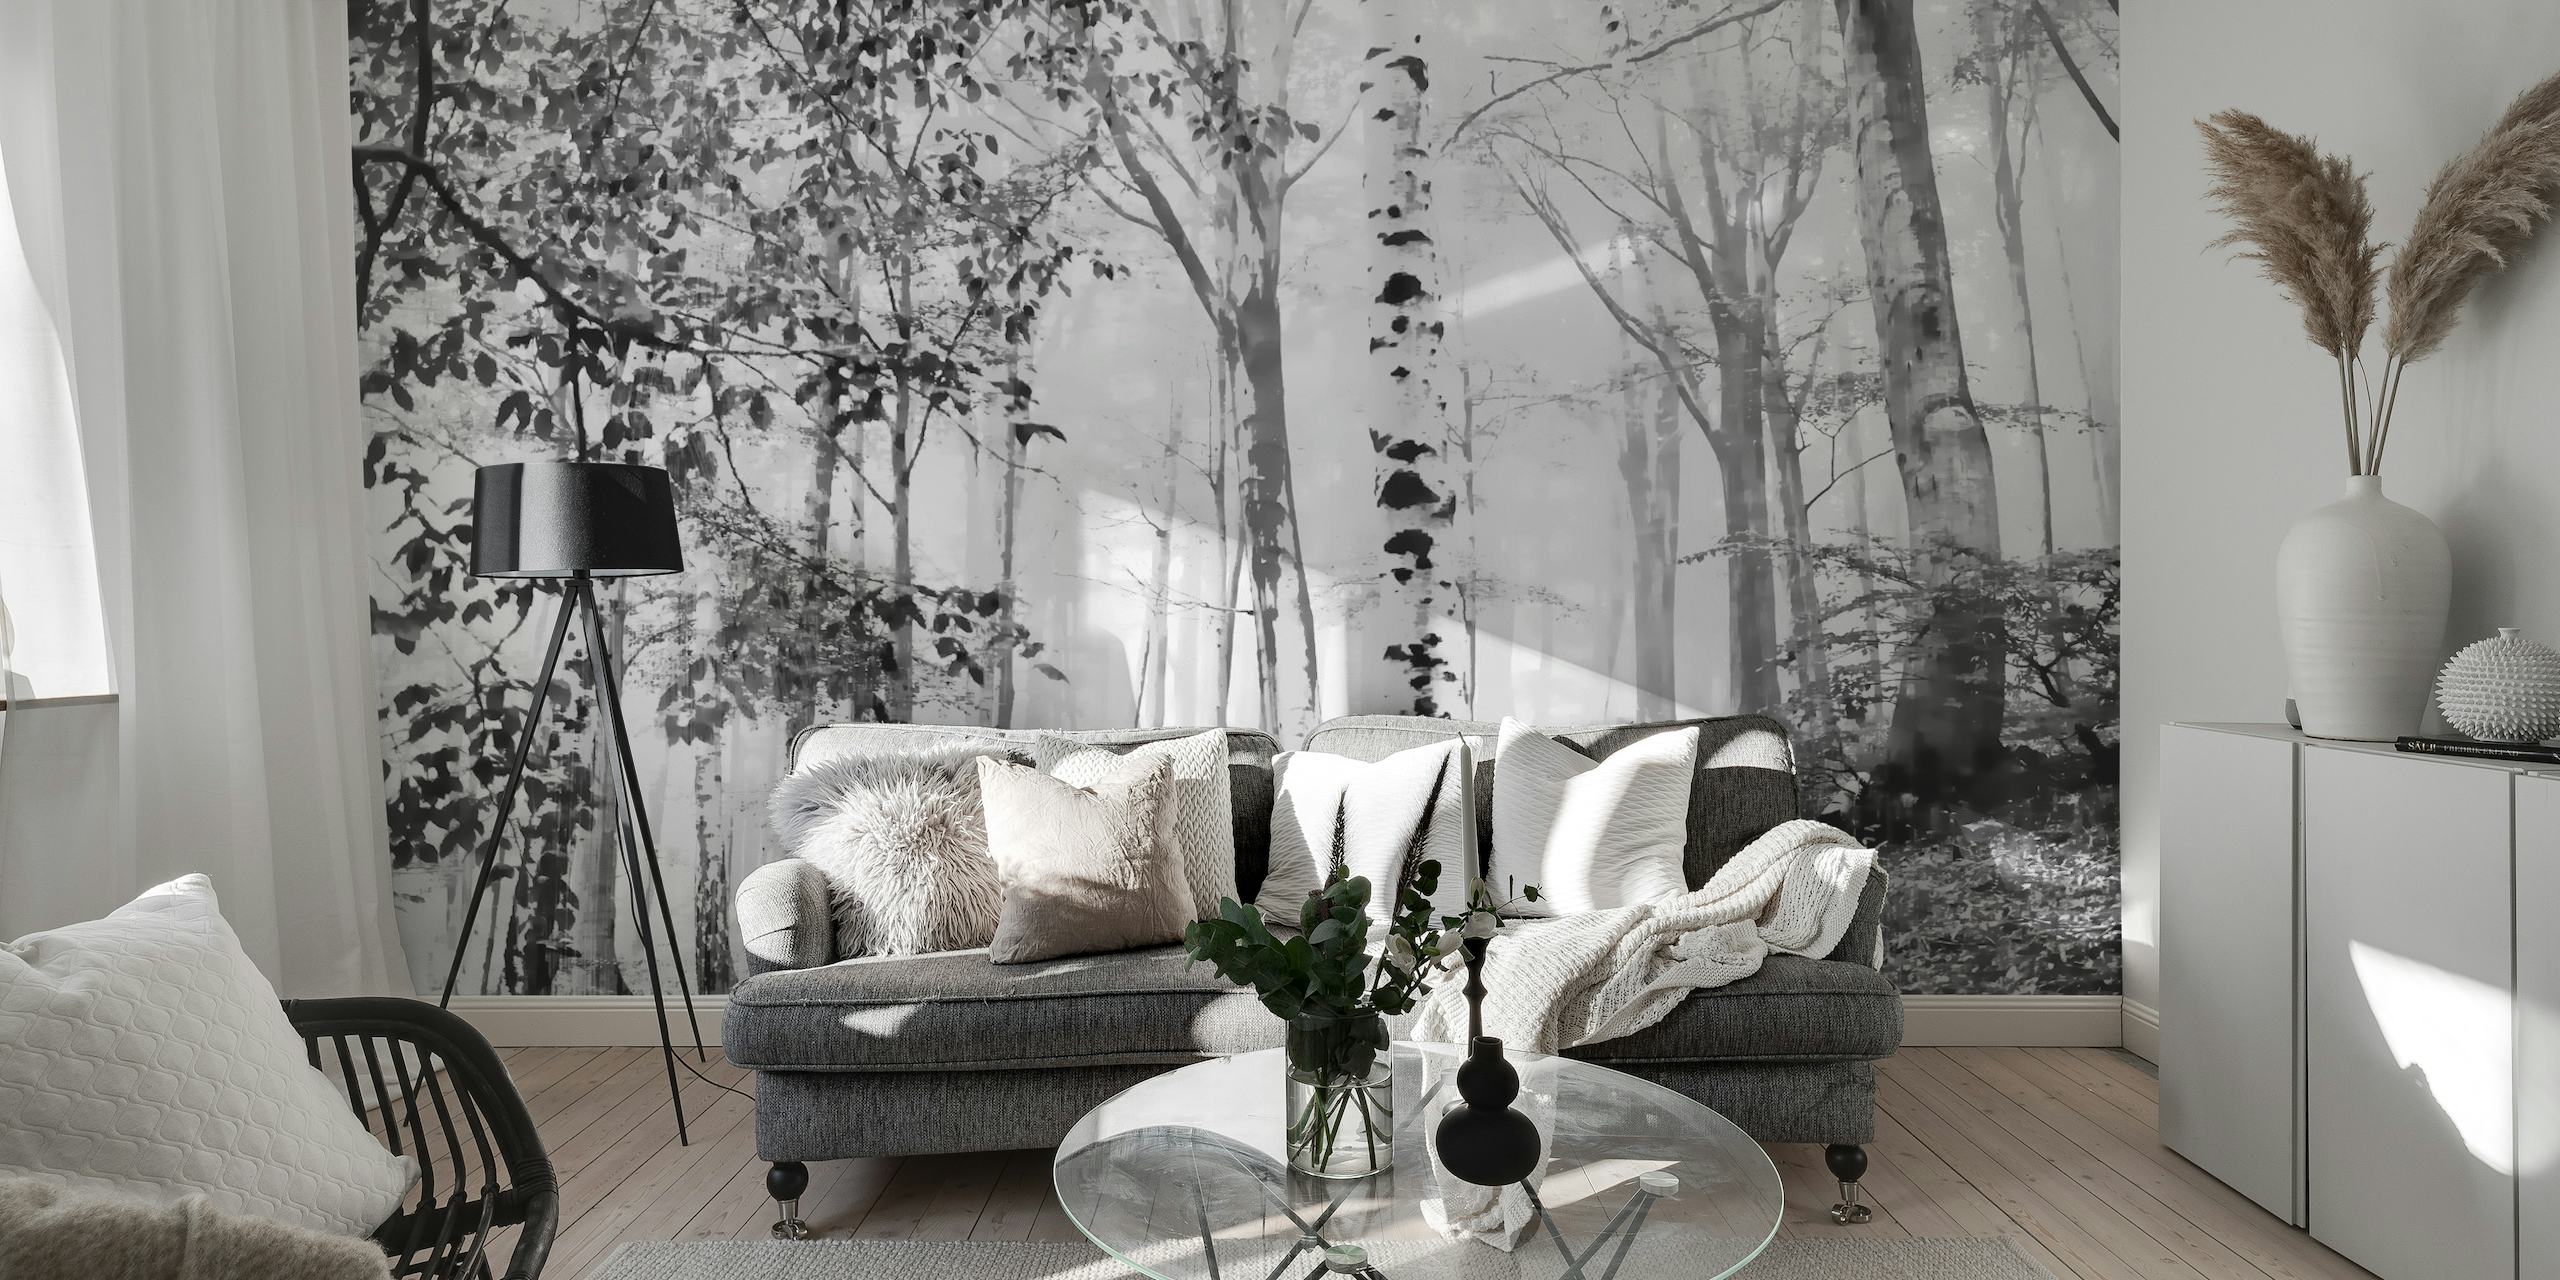 Mistige berkenbos muurschildering in zwart en wit, waardoor een serene bosscène voor het interieur ontstaat